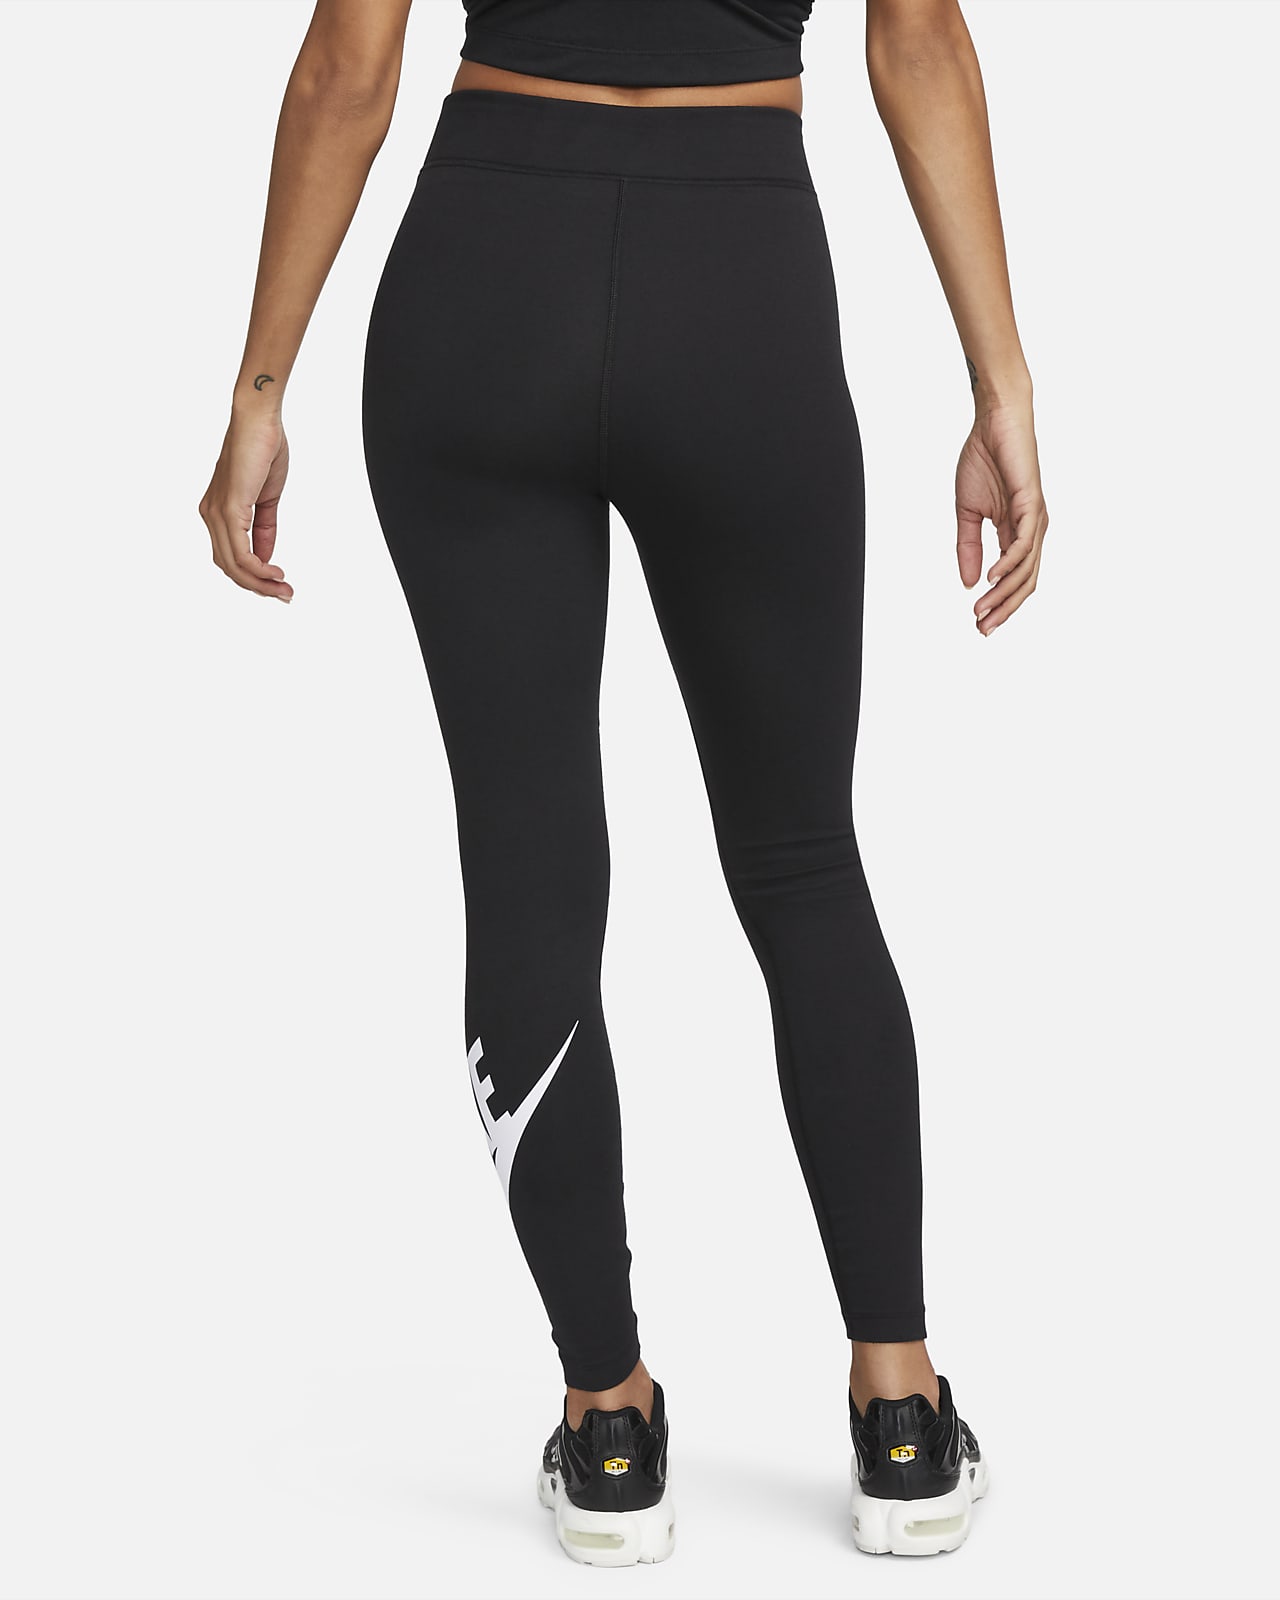 Notre guide des meilleurs leggings pour Femme. Nike CA